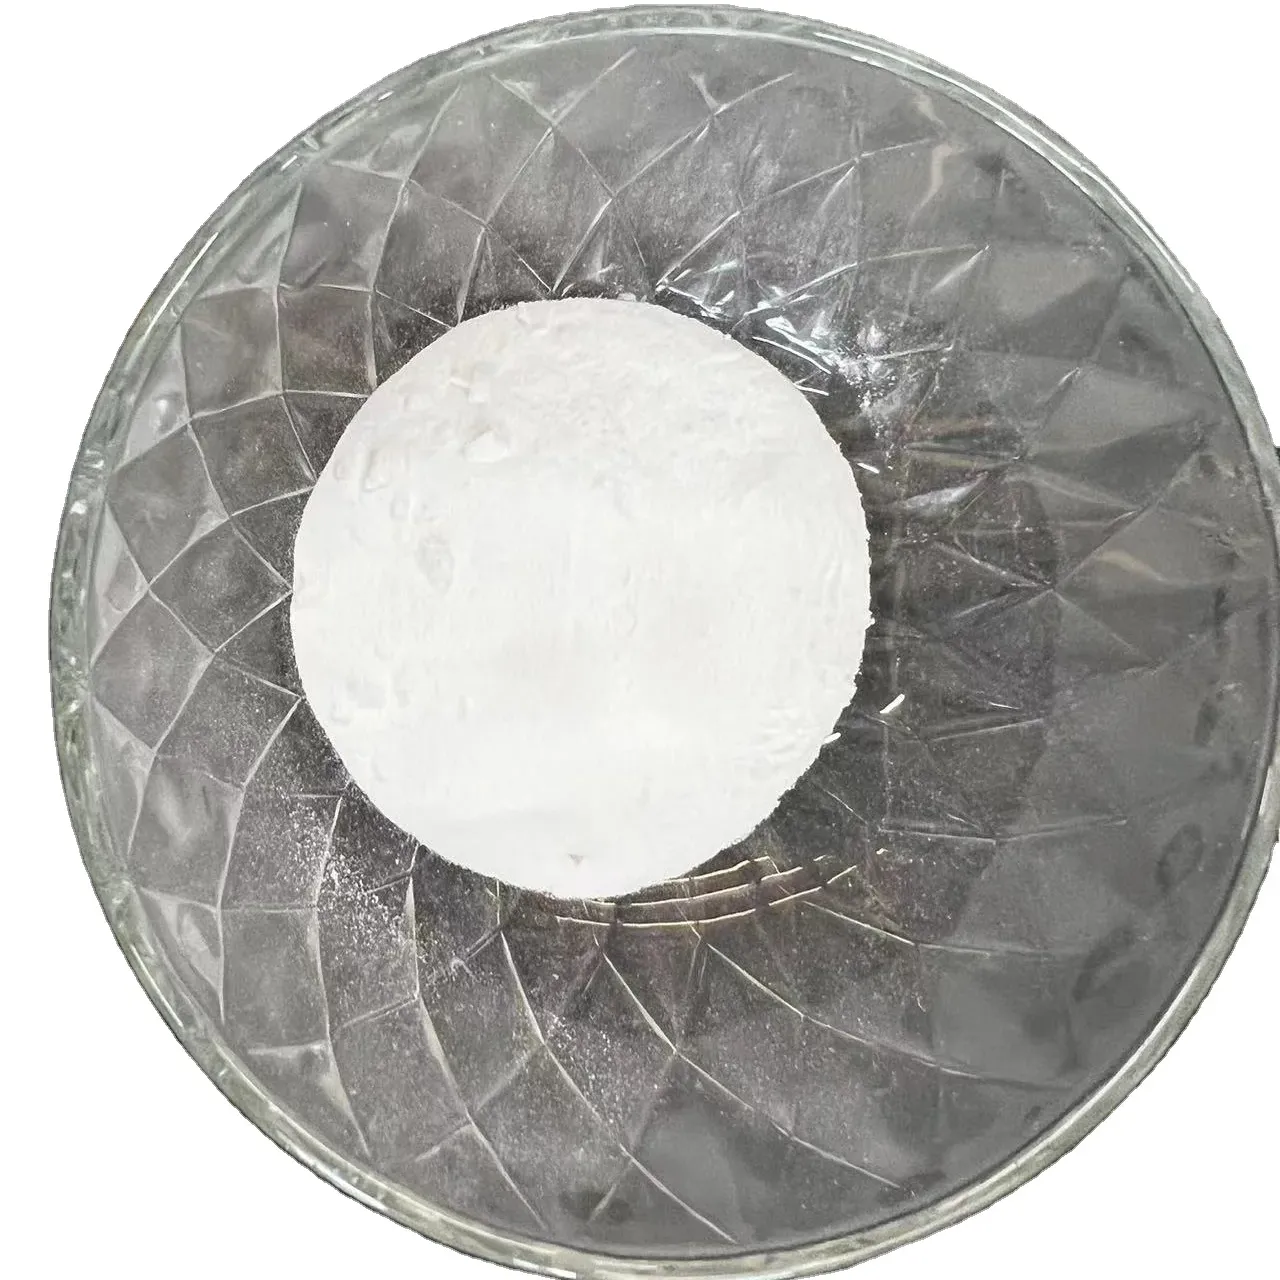 Composti pa12 in resina trasparente in nylon 12 t-r90 poliammide termoplastica 12 pellet di grado ottico pa12